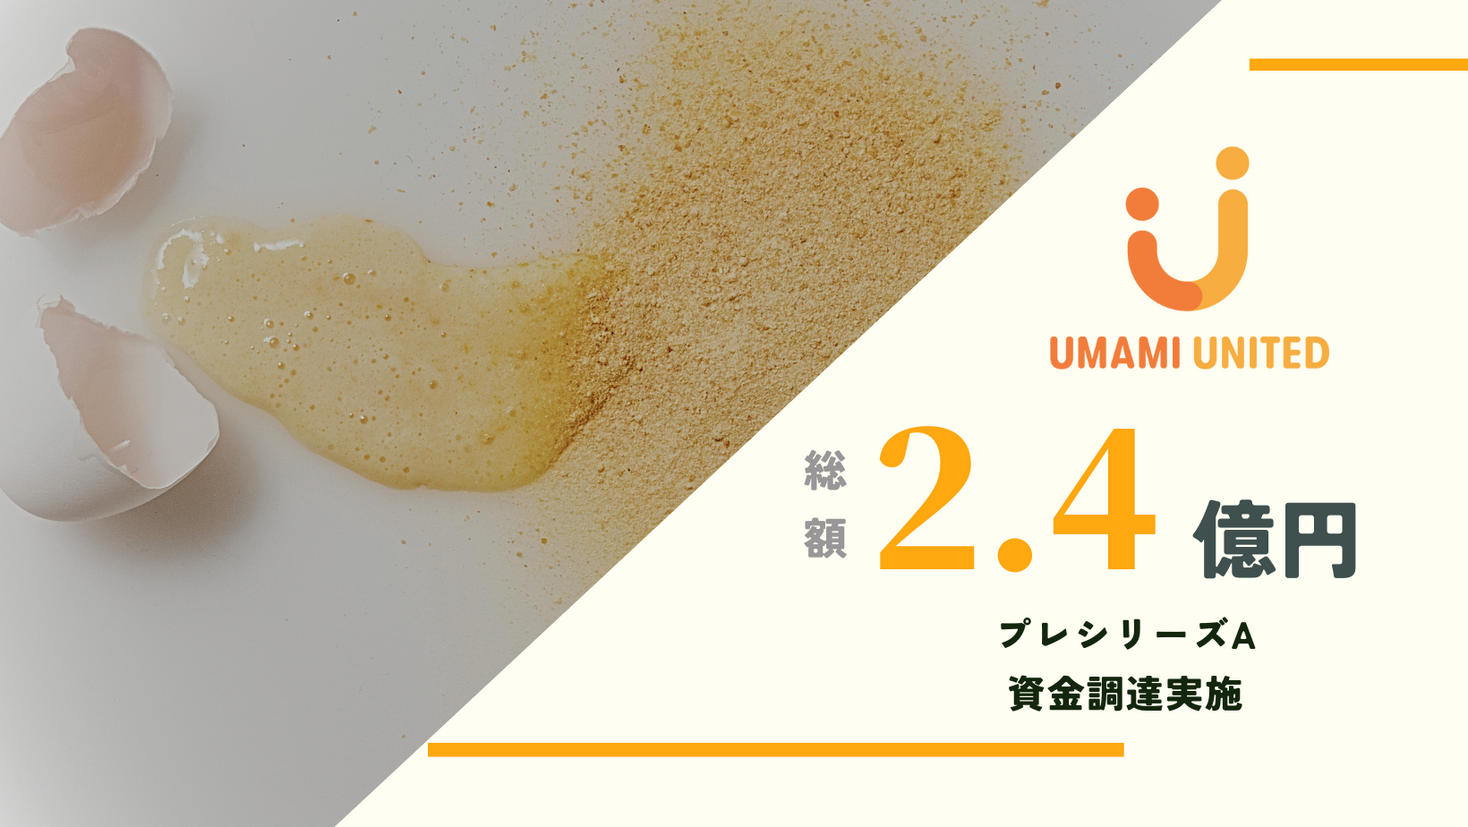 【資金調達】植物性卵「UMAMI UNITED」プレシリーズAで2.4億円 資金調達実施